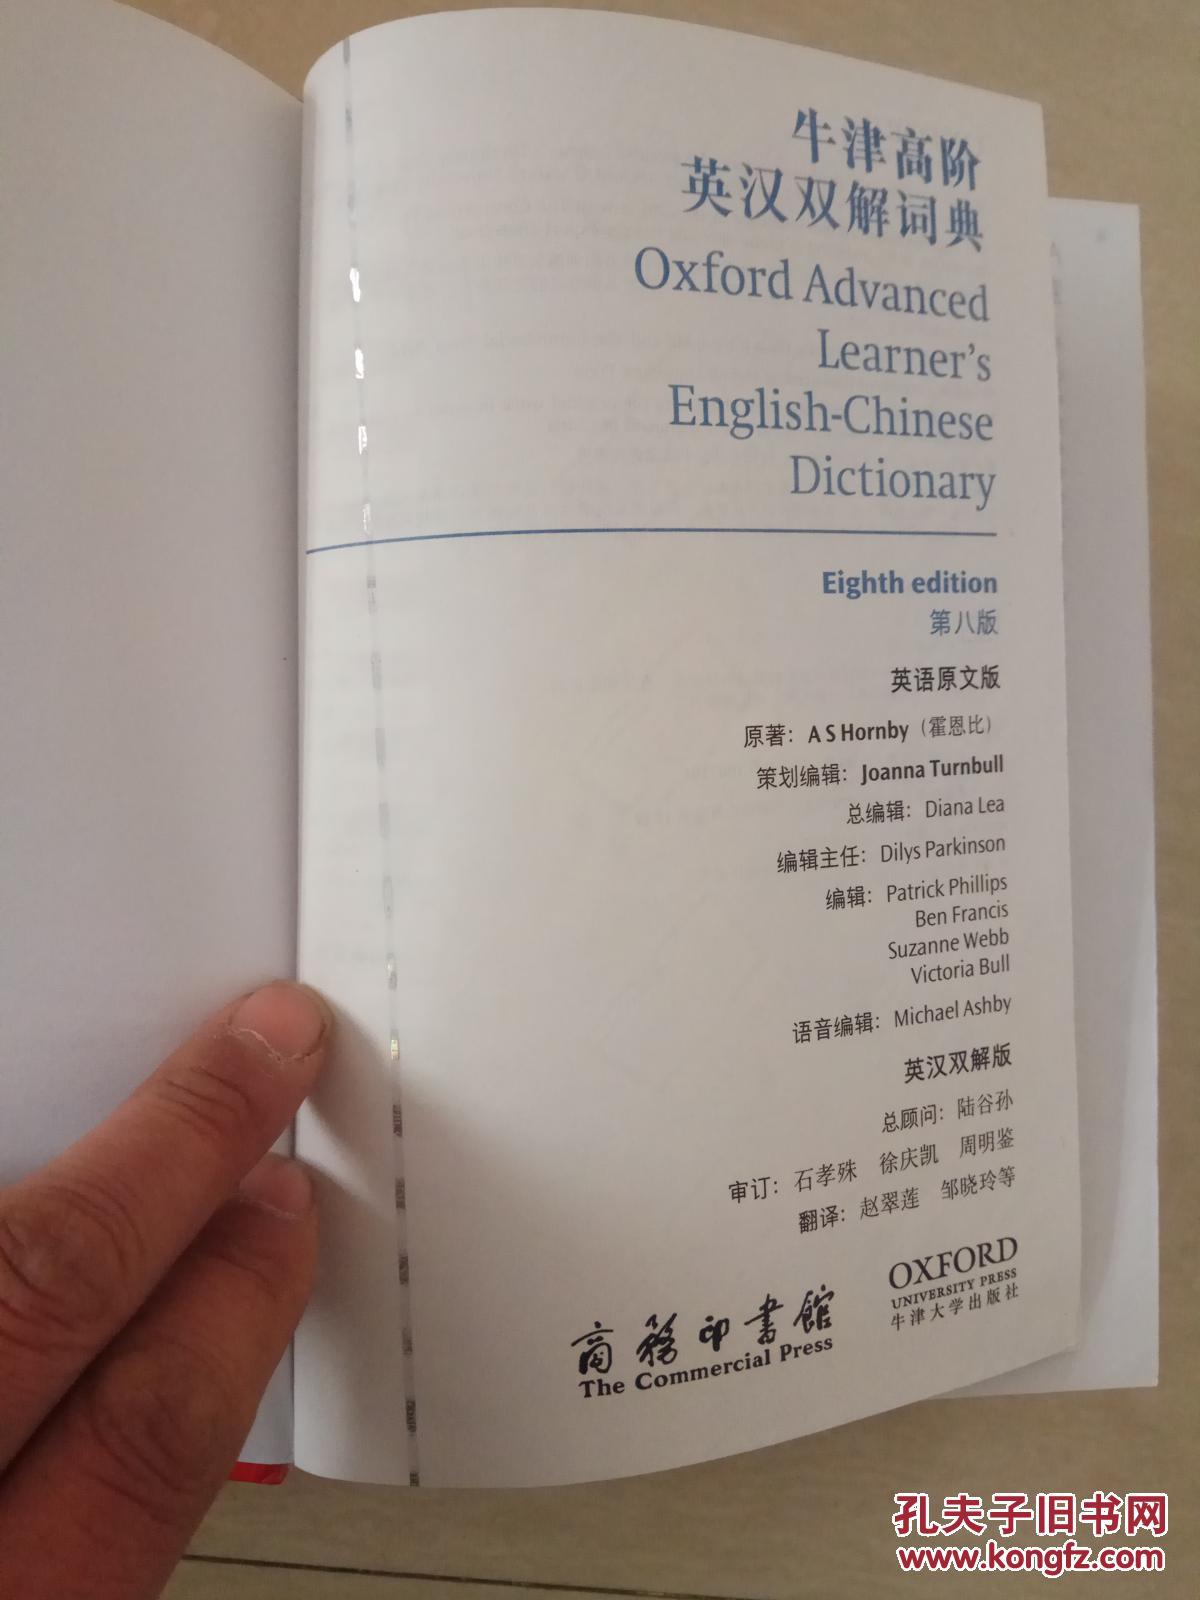 【图】牛津高阶英汉双解词典 第8版 第八版 含